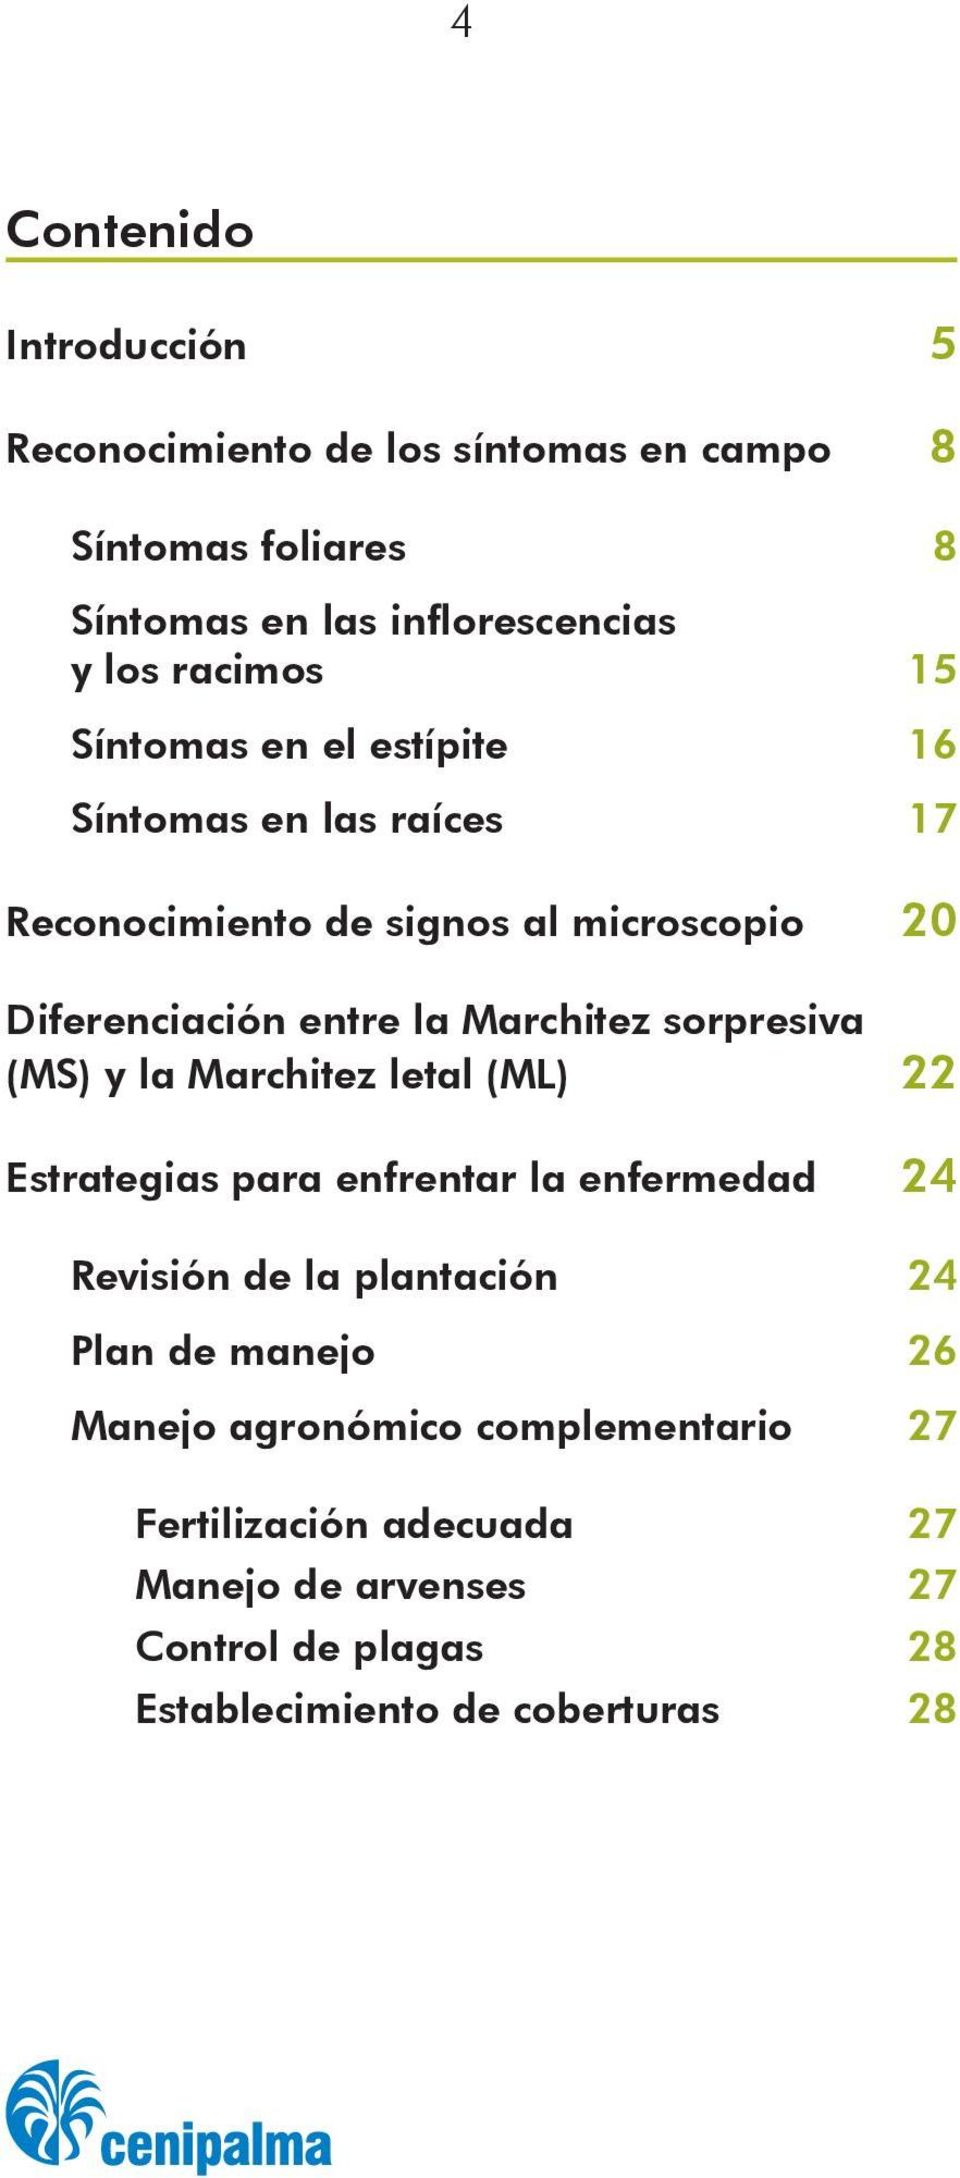 sorpresiva (MS) y la Marchitez letal (ML) 22 Estrategias para enfrentar la enfermedad 24 Revisión de la plantación 24 Plan de manejo 26